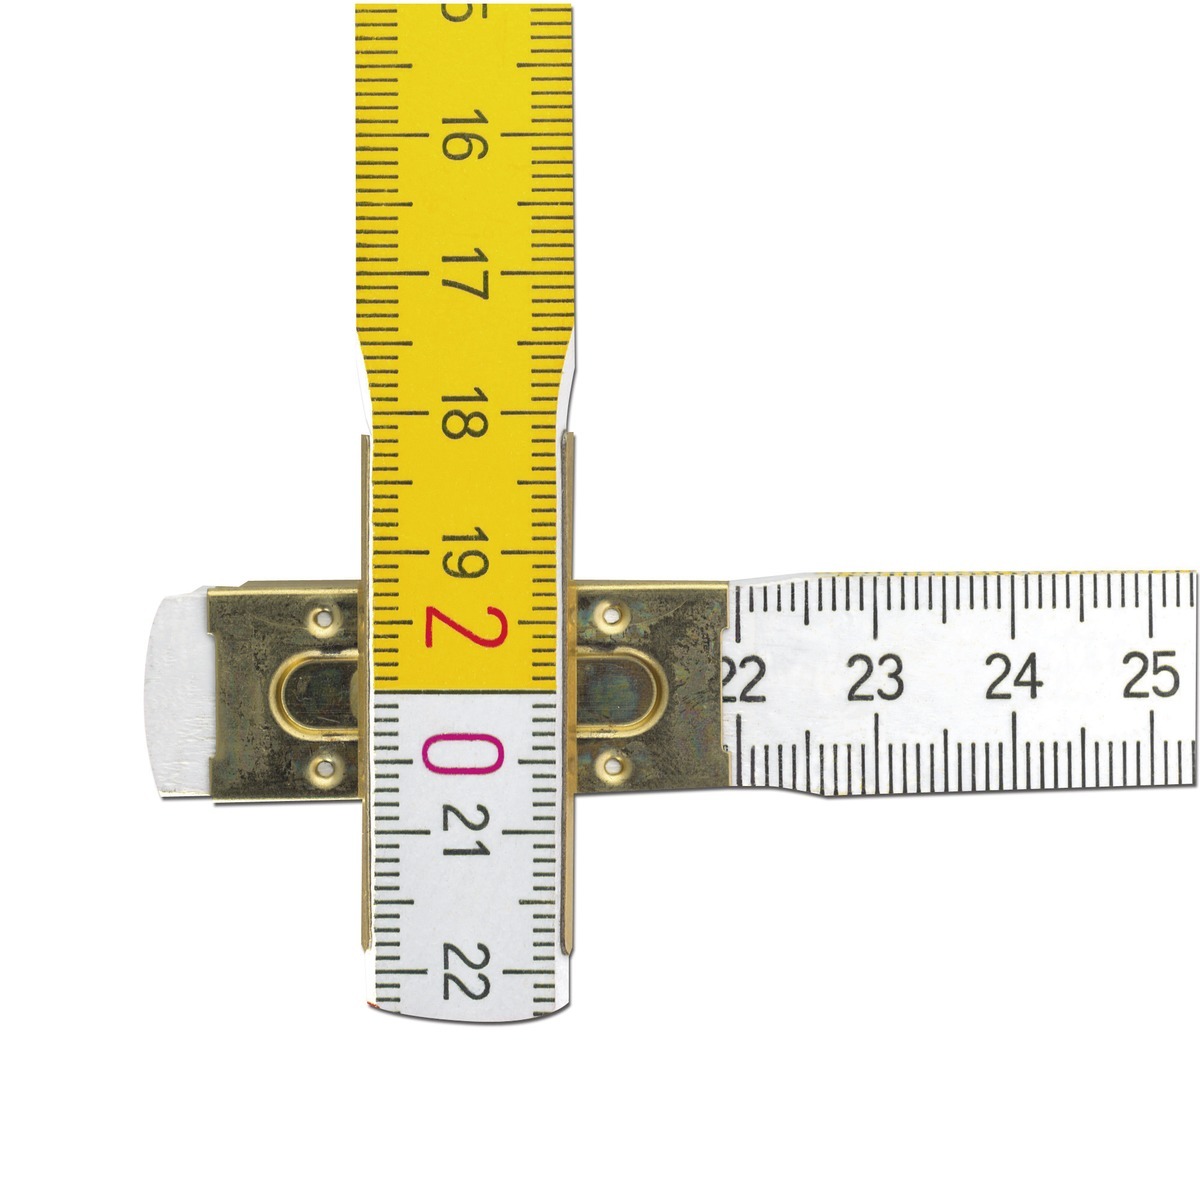 Mètre pliant en bois STABILA type 617/11, 3 m, graduations métriques blanches et jaunes pour une lecture plus rapide, certifié PEFC - 01231